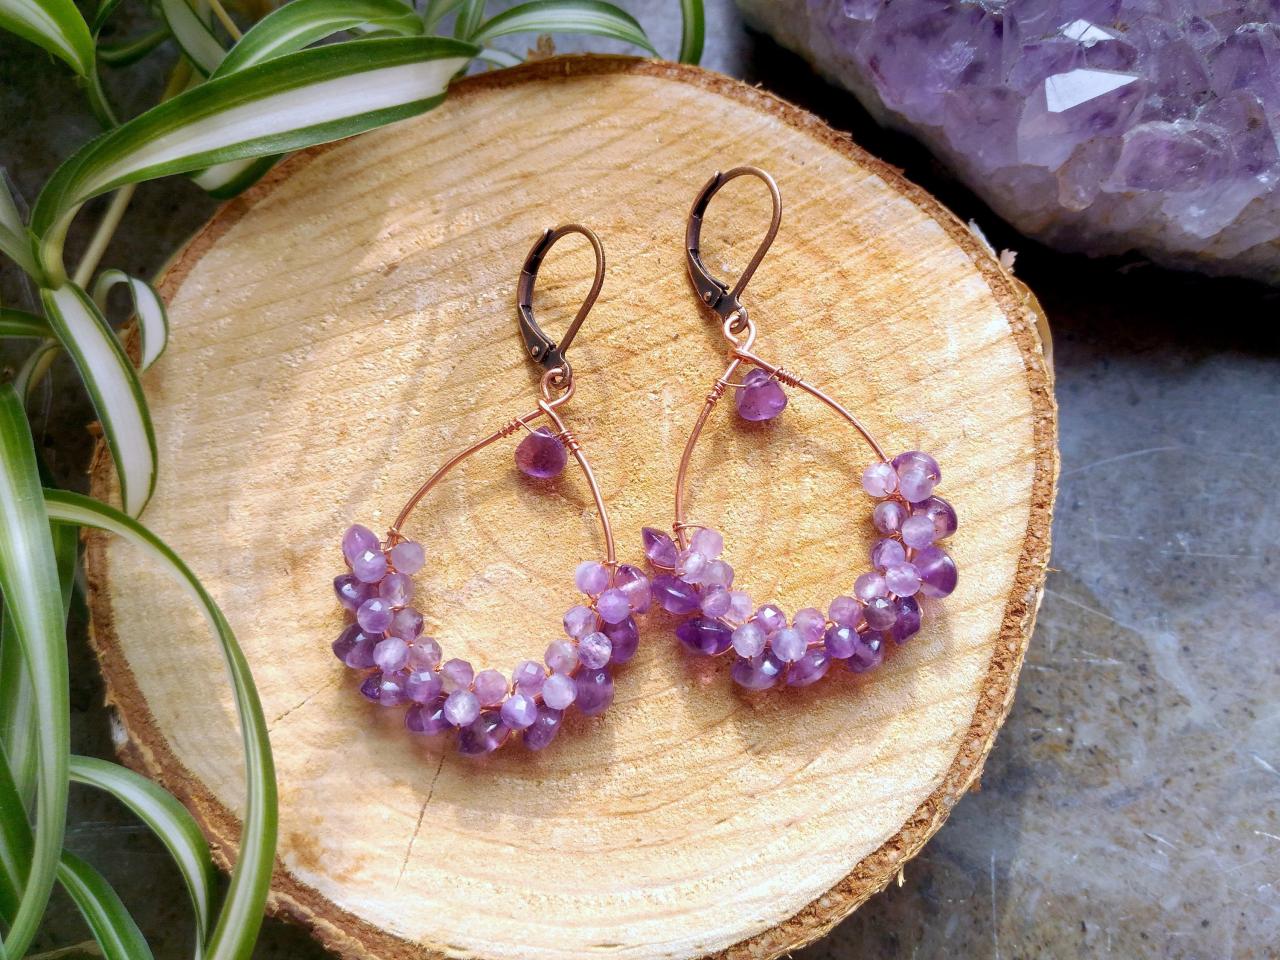 Amethyst Earrings, February Birthstone Earrings, Genuine Amethyst Gemstone Earrings, Purple And Copper Wire Wrapped Earrings With Amethyst